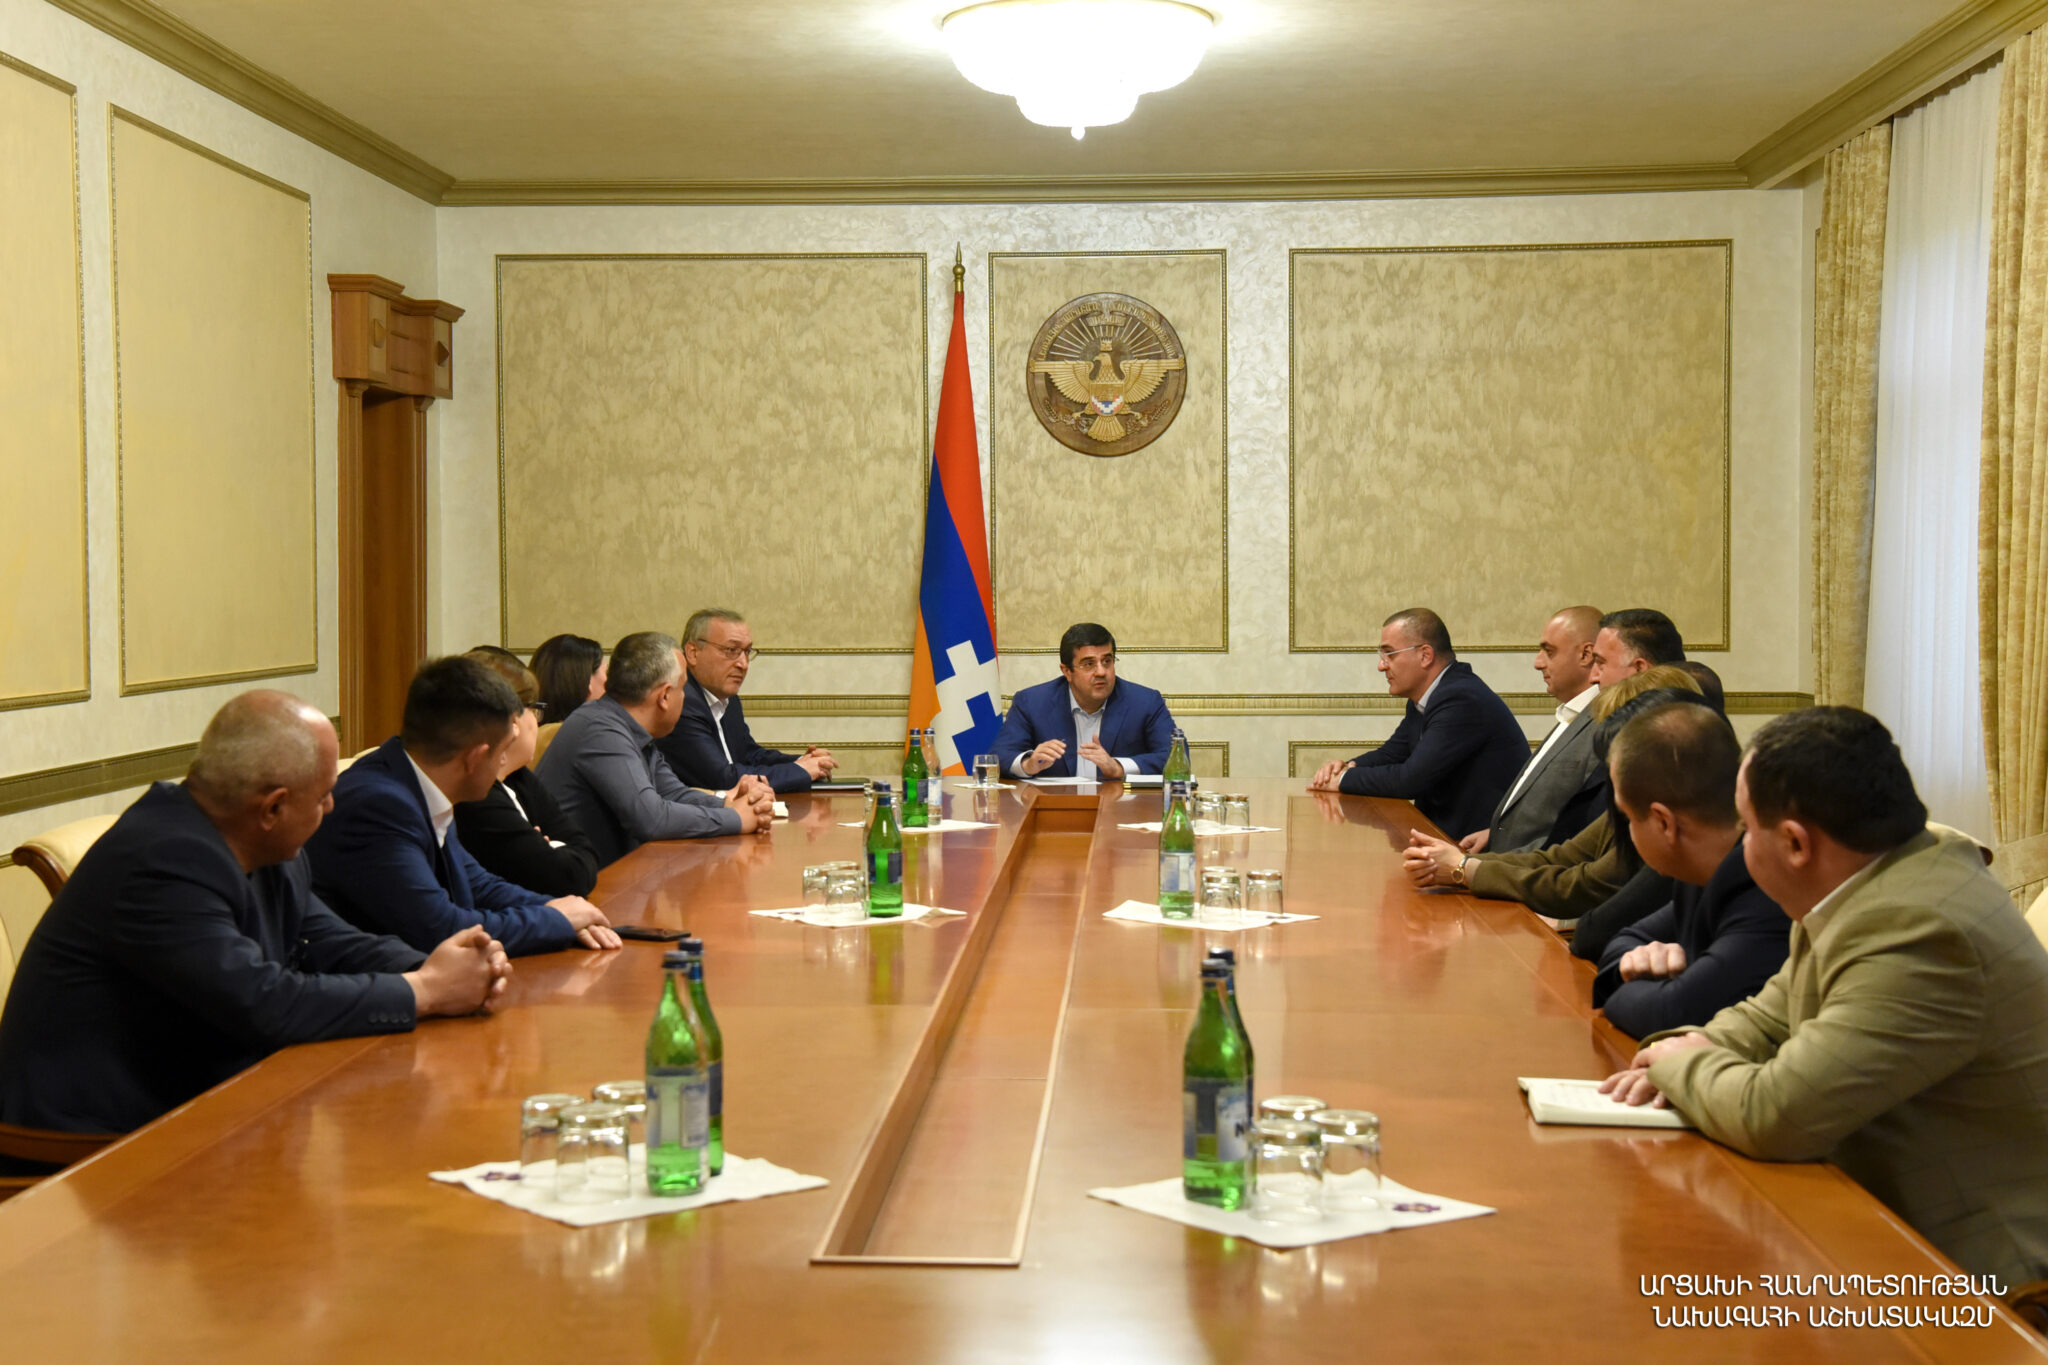 Արցախի նախագահը հանդիպել է «Ազատ հայրենիք-ՔՄԴ» խորհրդարանական խմբակցության անդամների հետ